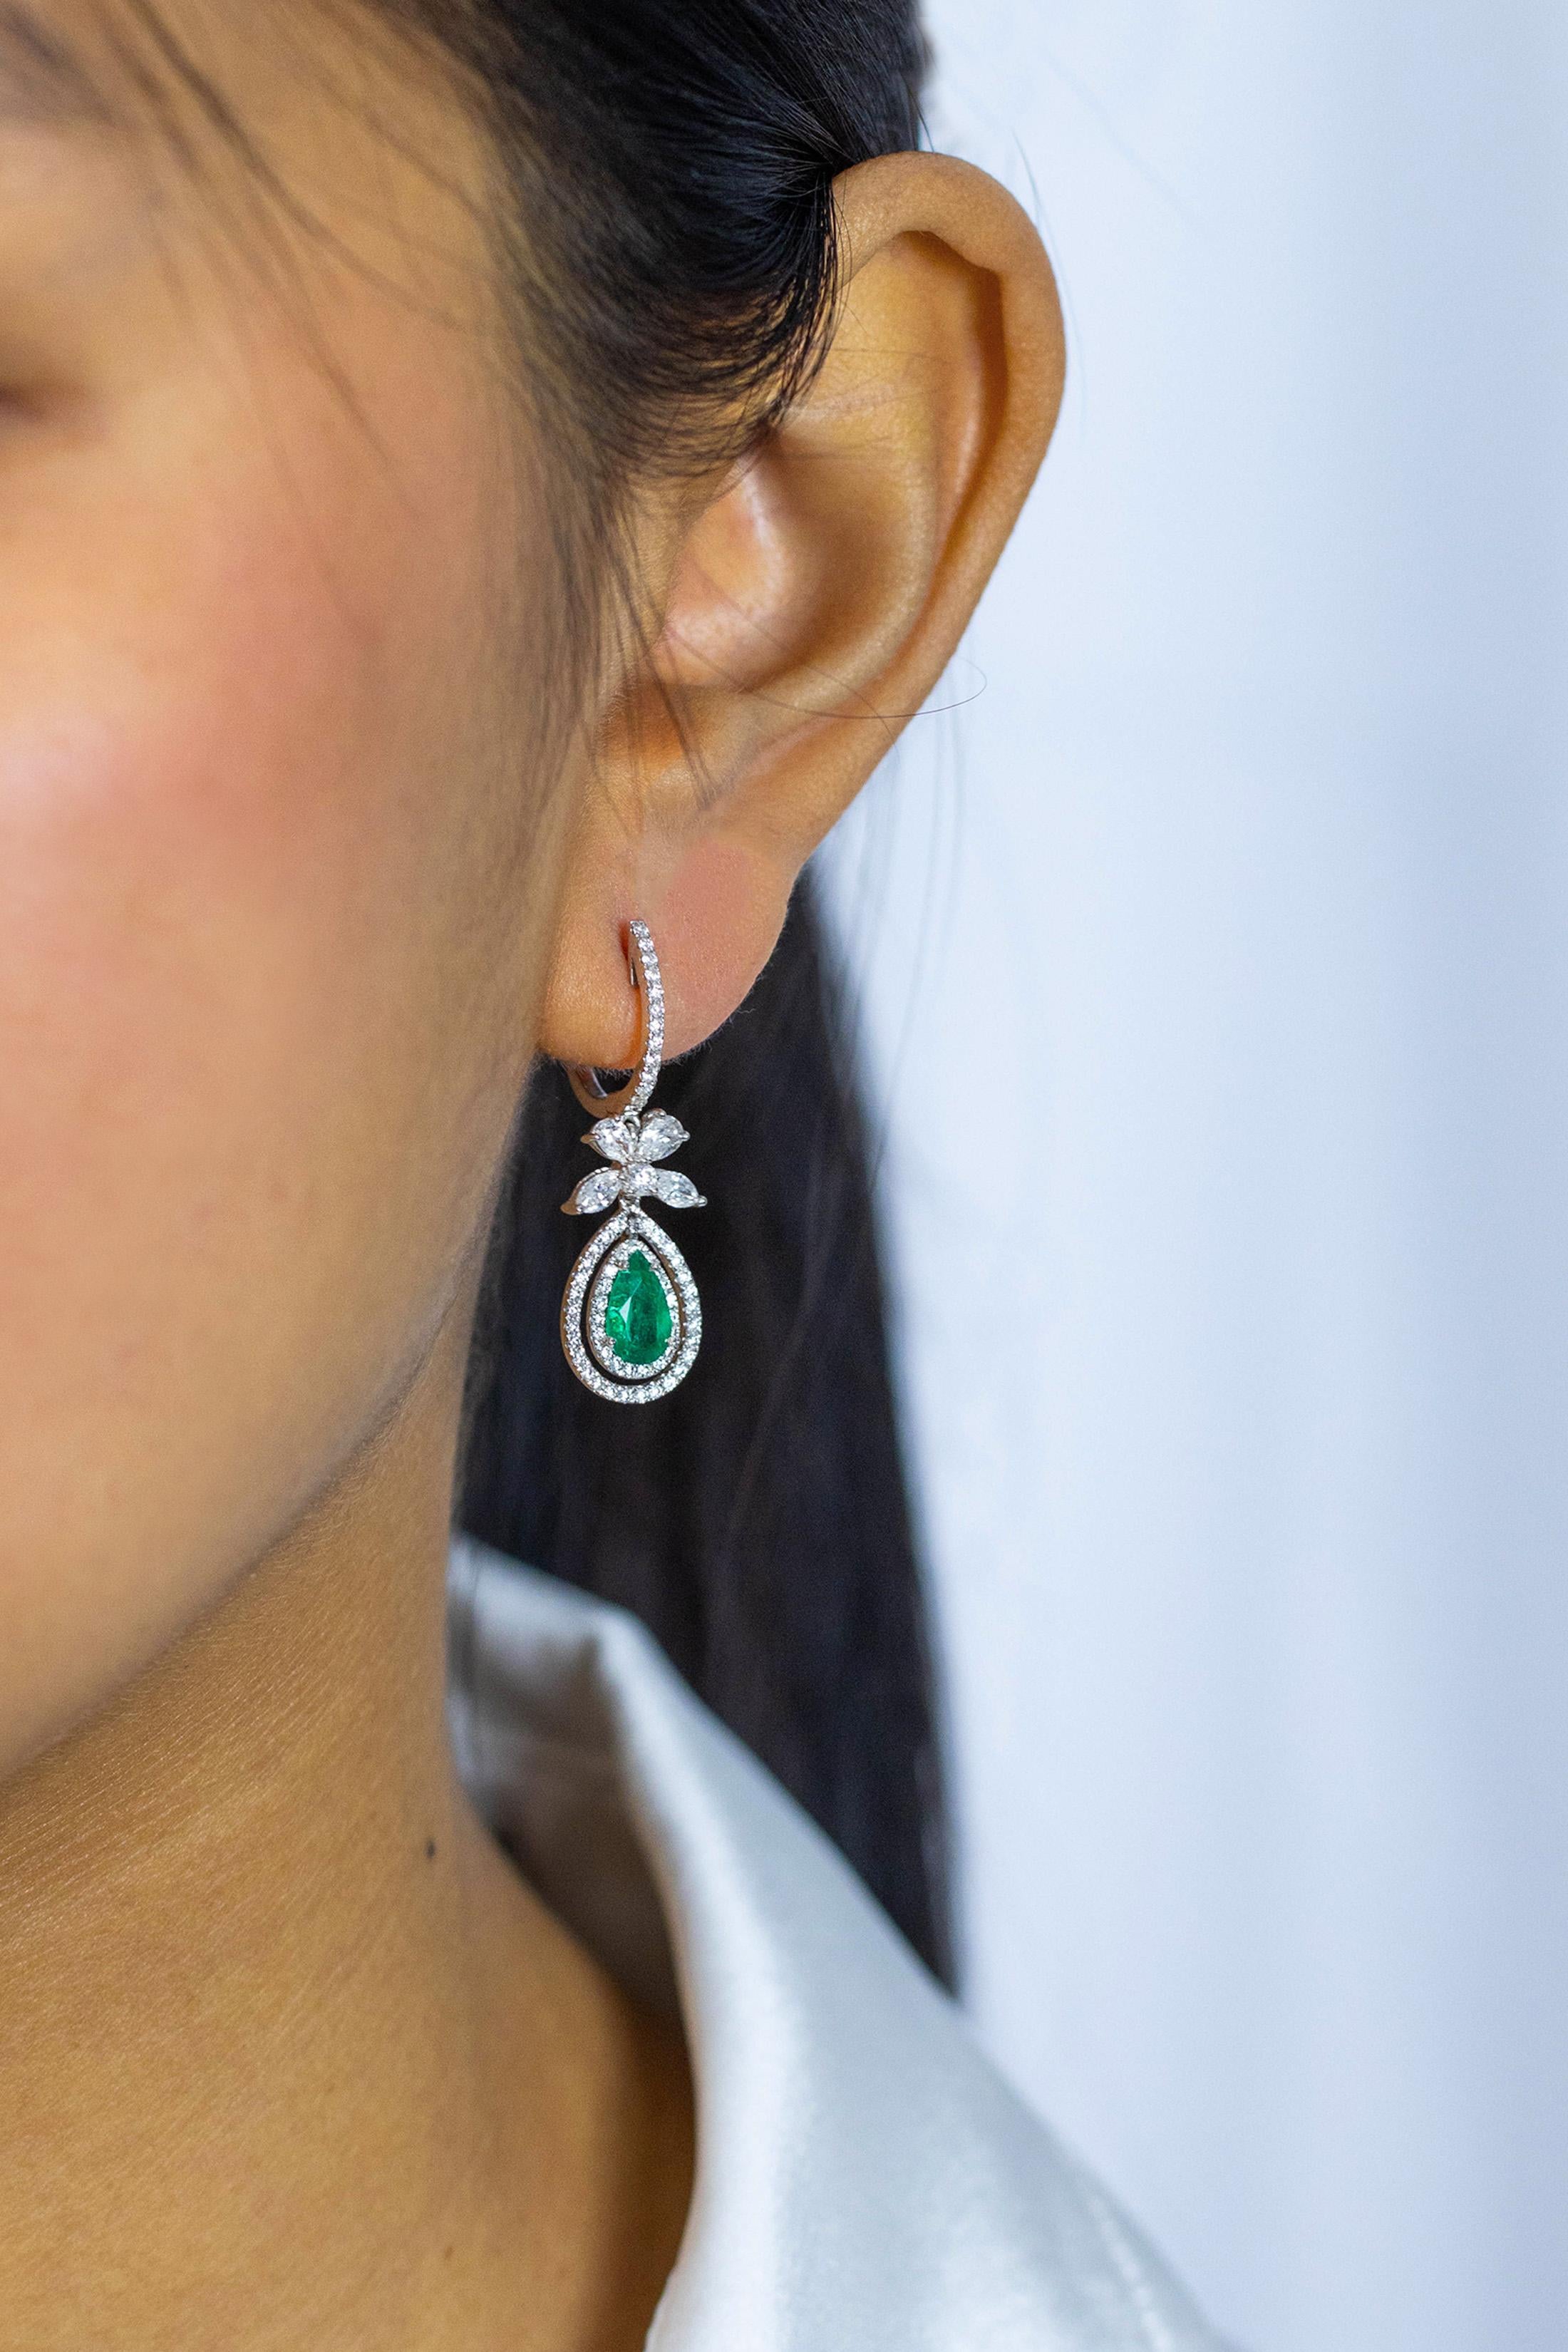 Diese wunderschönen Ohrringe haben einen birnenförmigen grünen Smaragd mit einem Gewicht von 1,14 Karat in der Mitte und 2 Reihen runder Brillanten, die den Smaragd umgeben. Eine bogenförmige Figur aus Diamanten hängt über den Smaragden, und noch